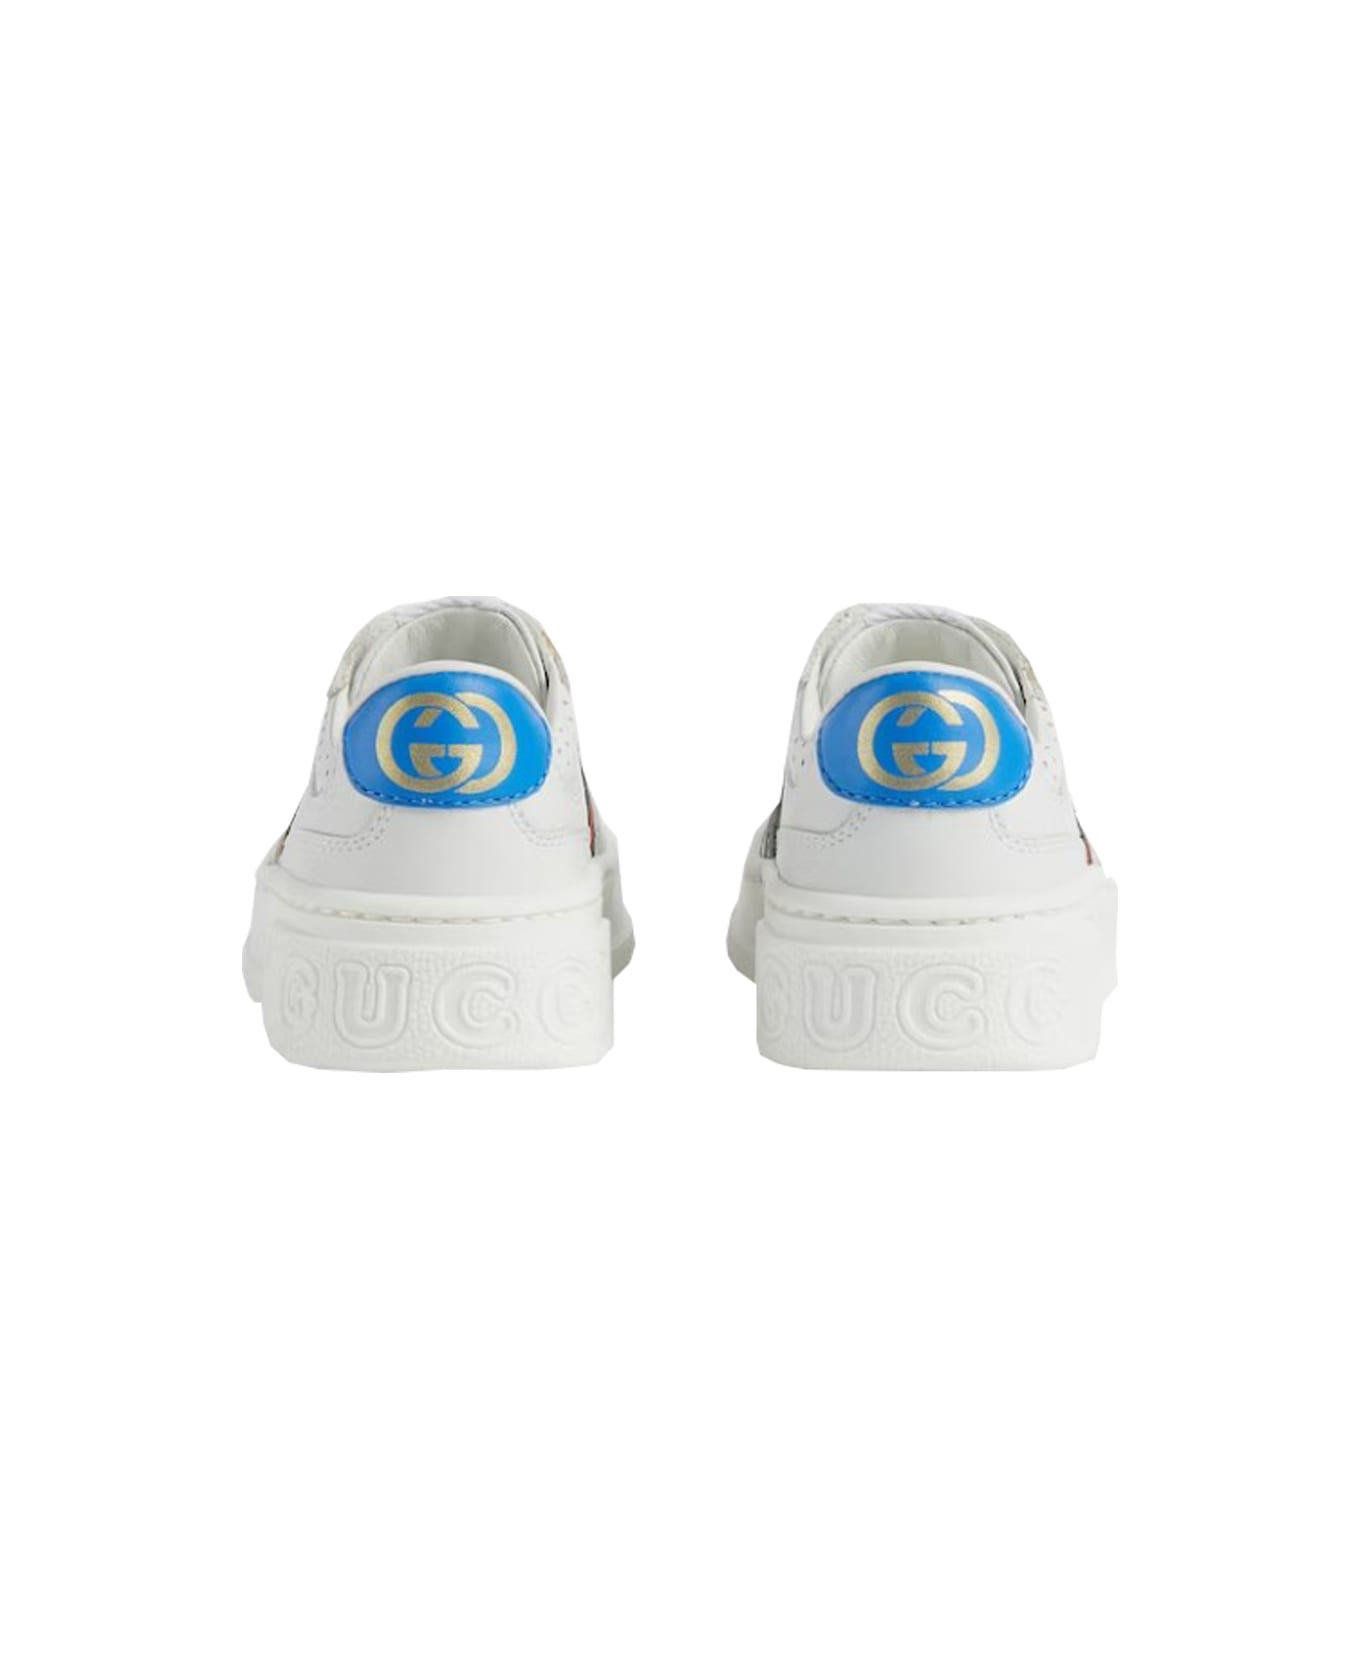 Gucci Sneaker - White シューズ